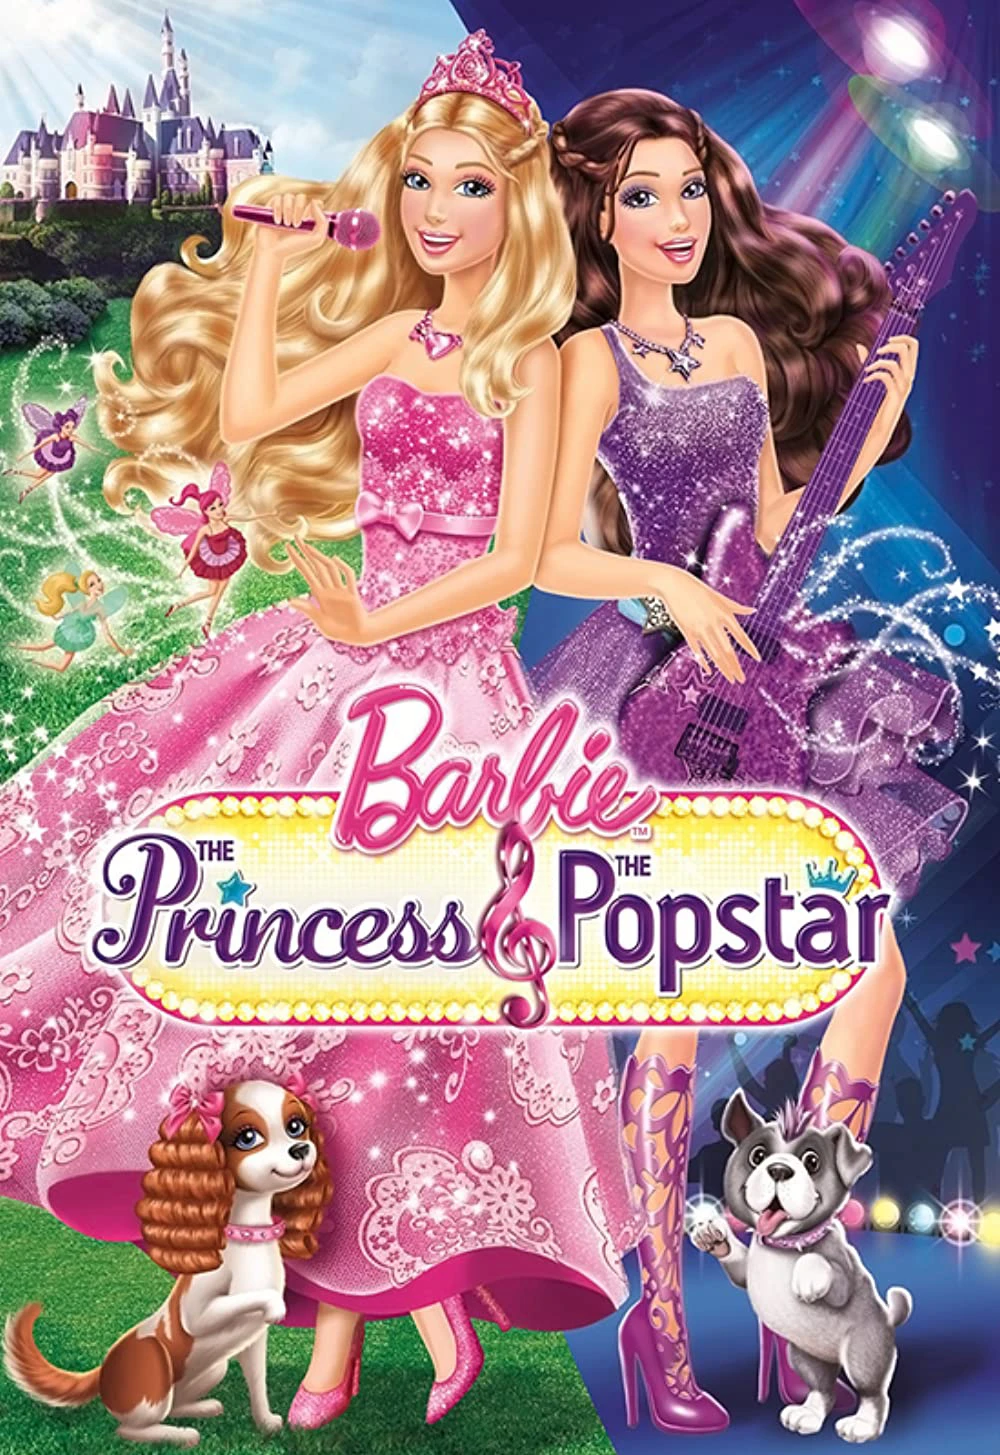 Barbie: The Princess & the Popstar | Barbie: The Princess & the Popstar (2012)